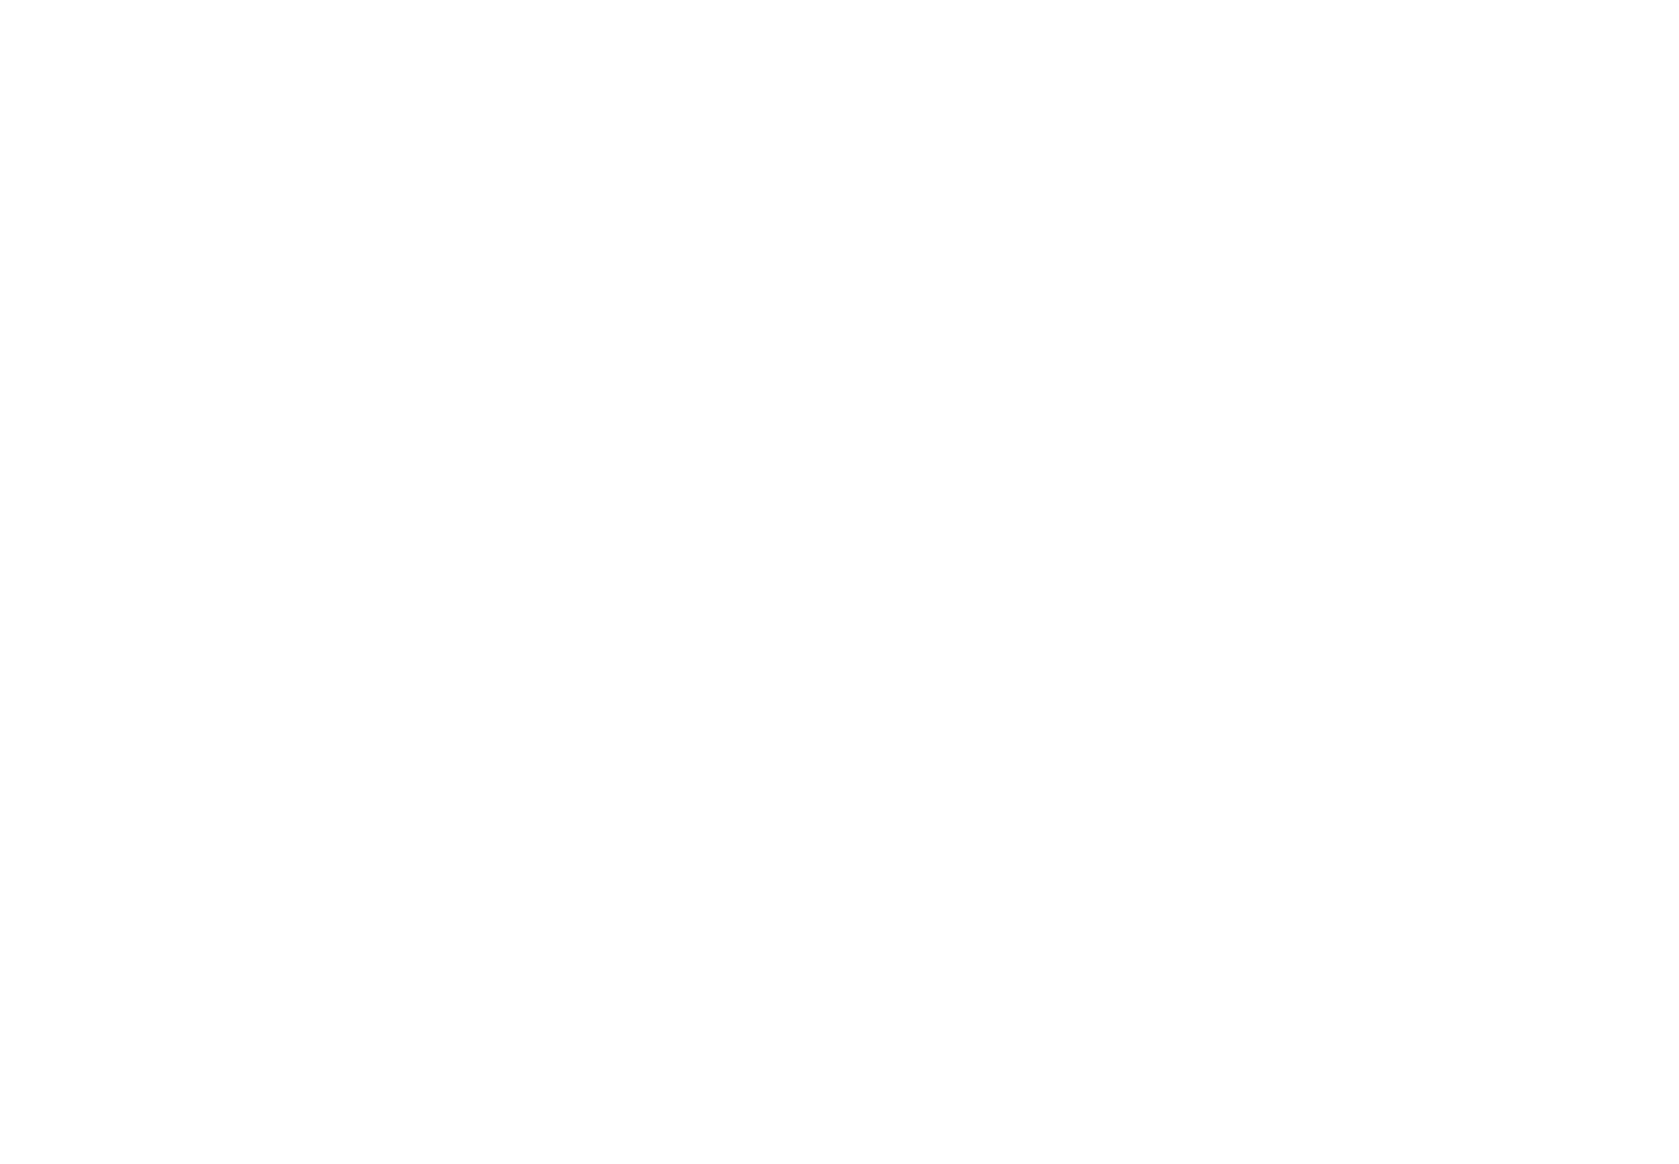 Государь Император Николай II перед строем участников скачек. На заднем плане можно увидеть трибуны ипподрома. Месторасположение условное. Источник: материалы сайта PastVu https://pastvu.com/p/417967